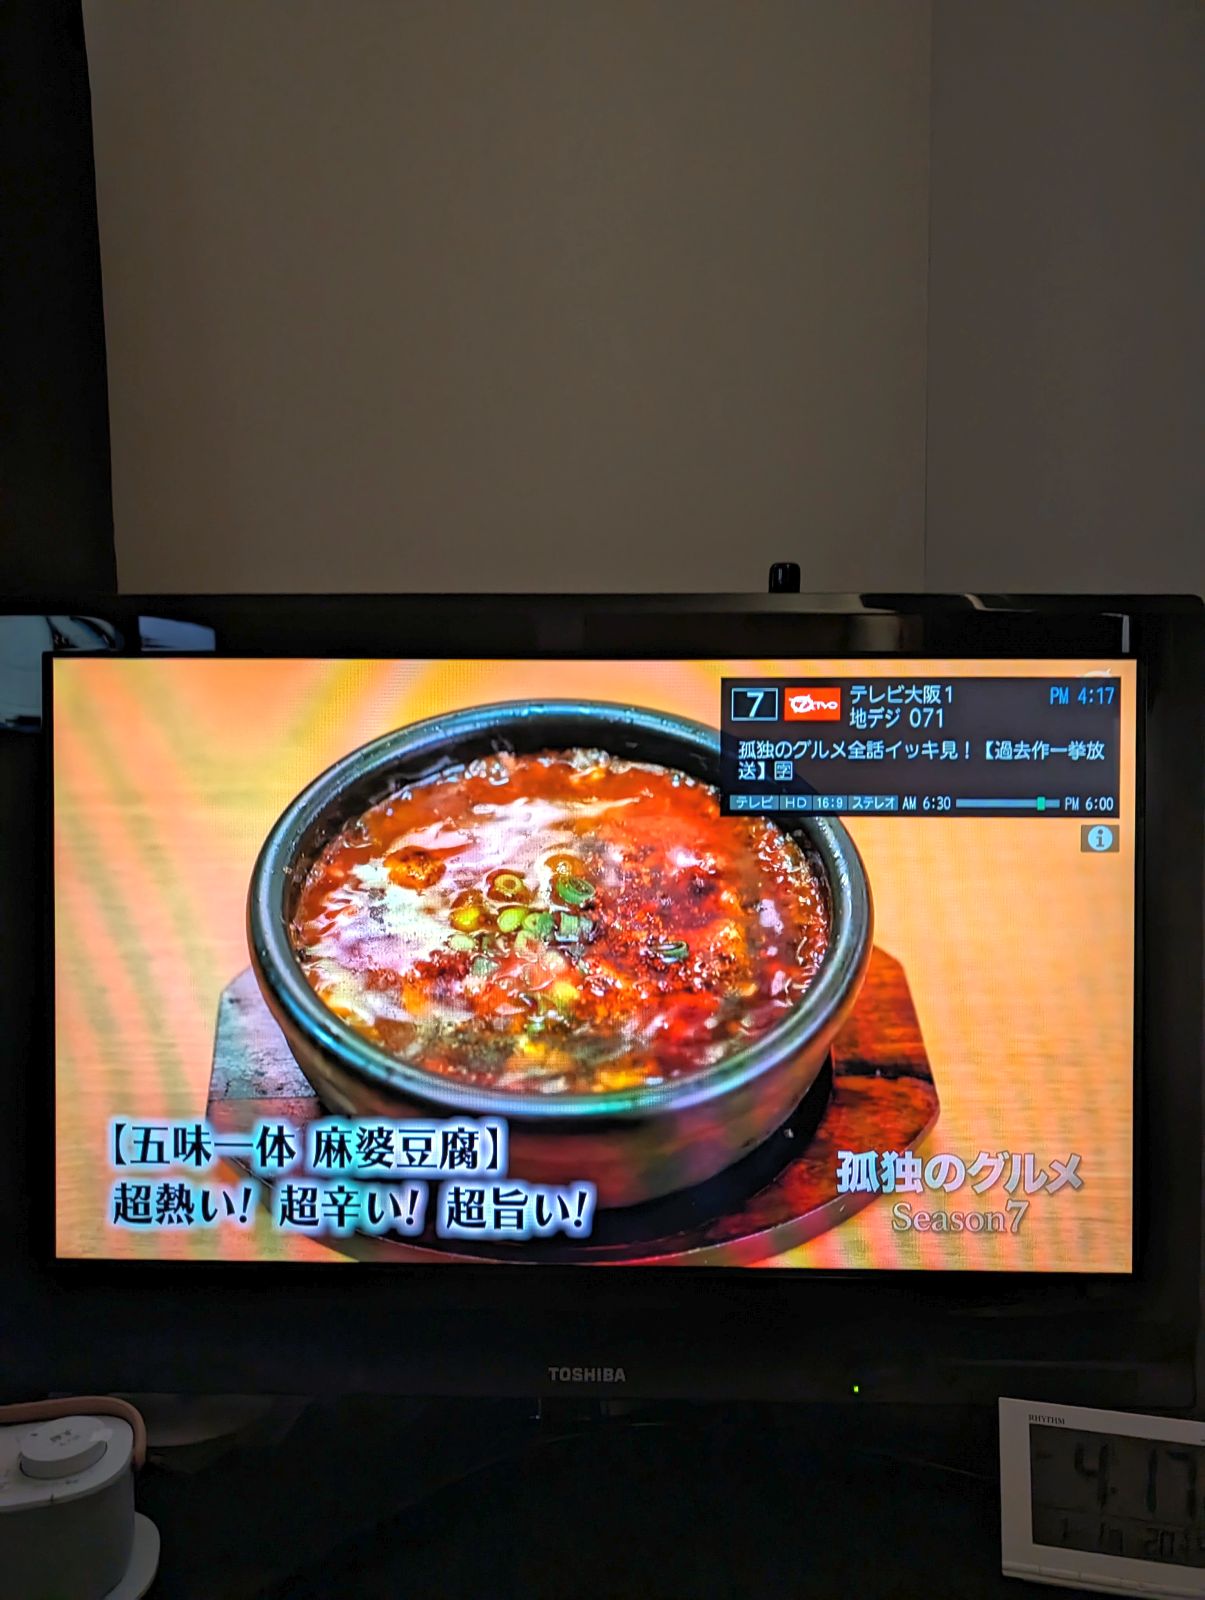 テレビ大阪の放送